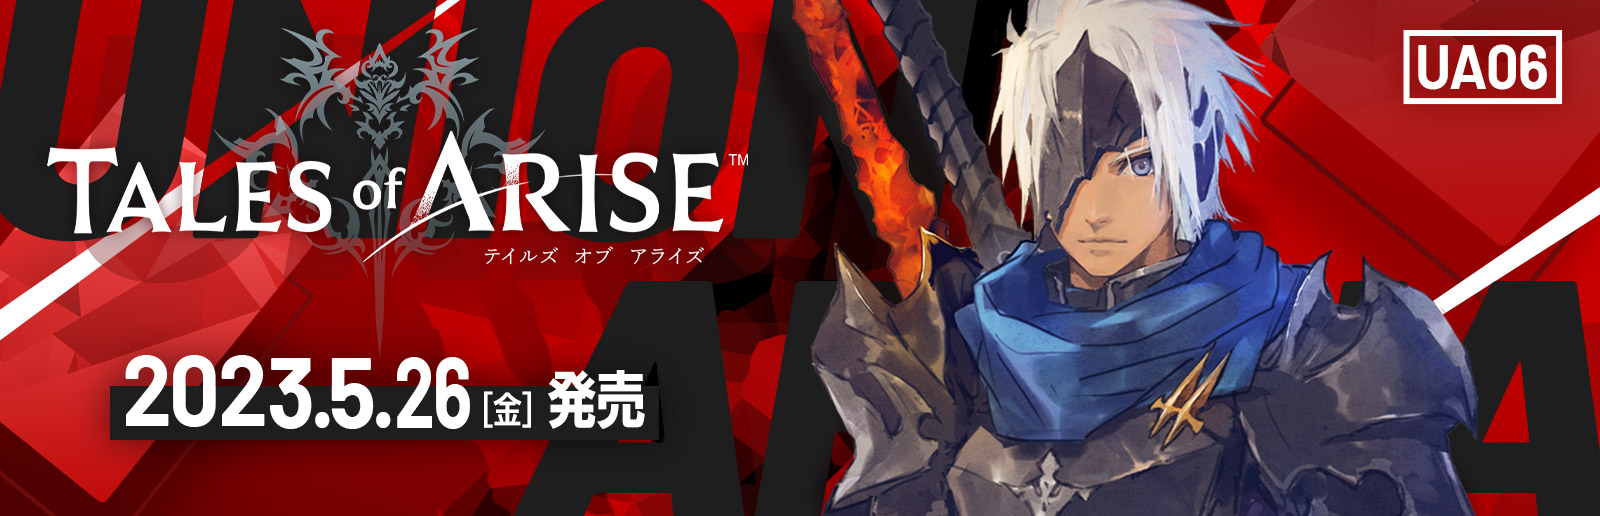 ユニオンアリーナ】デッキレシピ【Tales of ARISE】 | 狙い撃ち